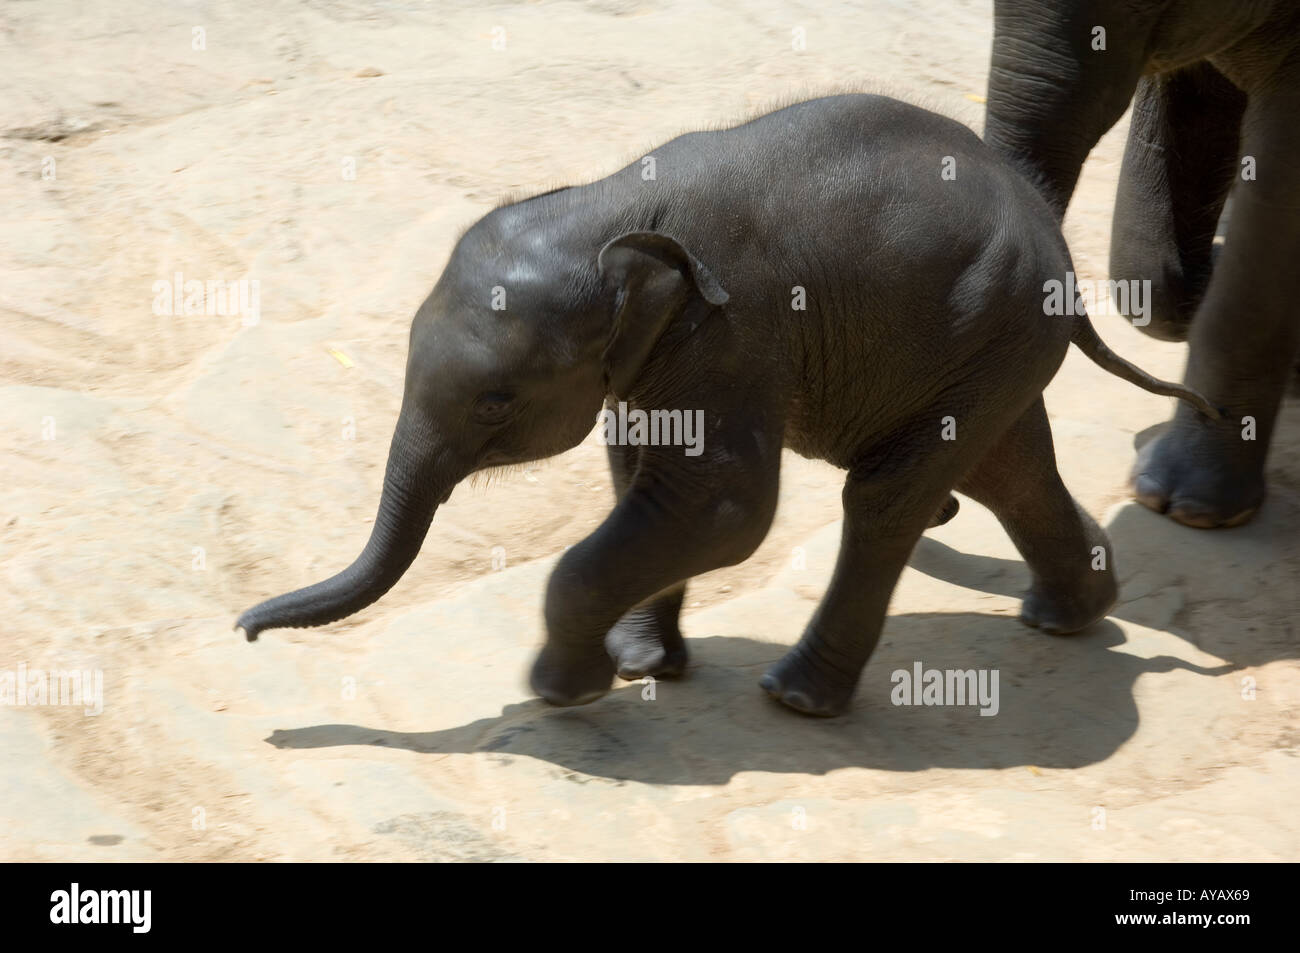 Baby elephant walking up from the river at Pinnawala Elephant Sanctuary, Sri Lanka. Stock Photo